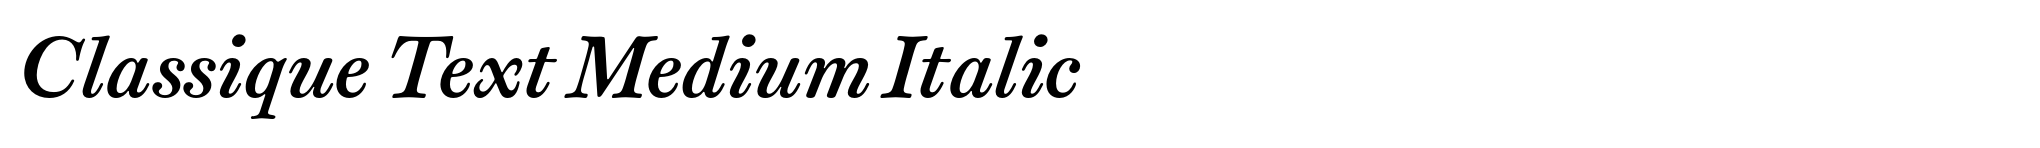 Classique Text Medium Italic image